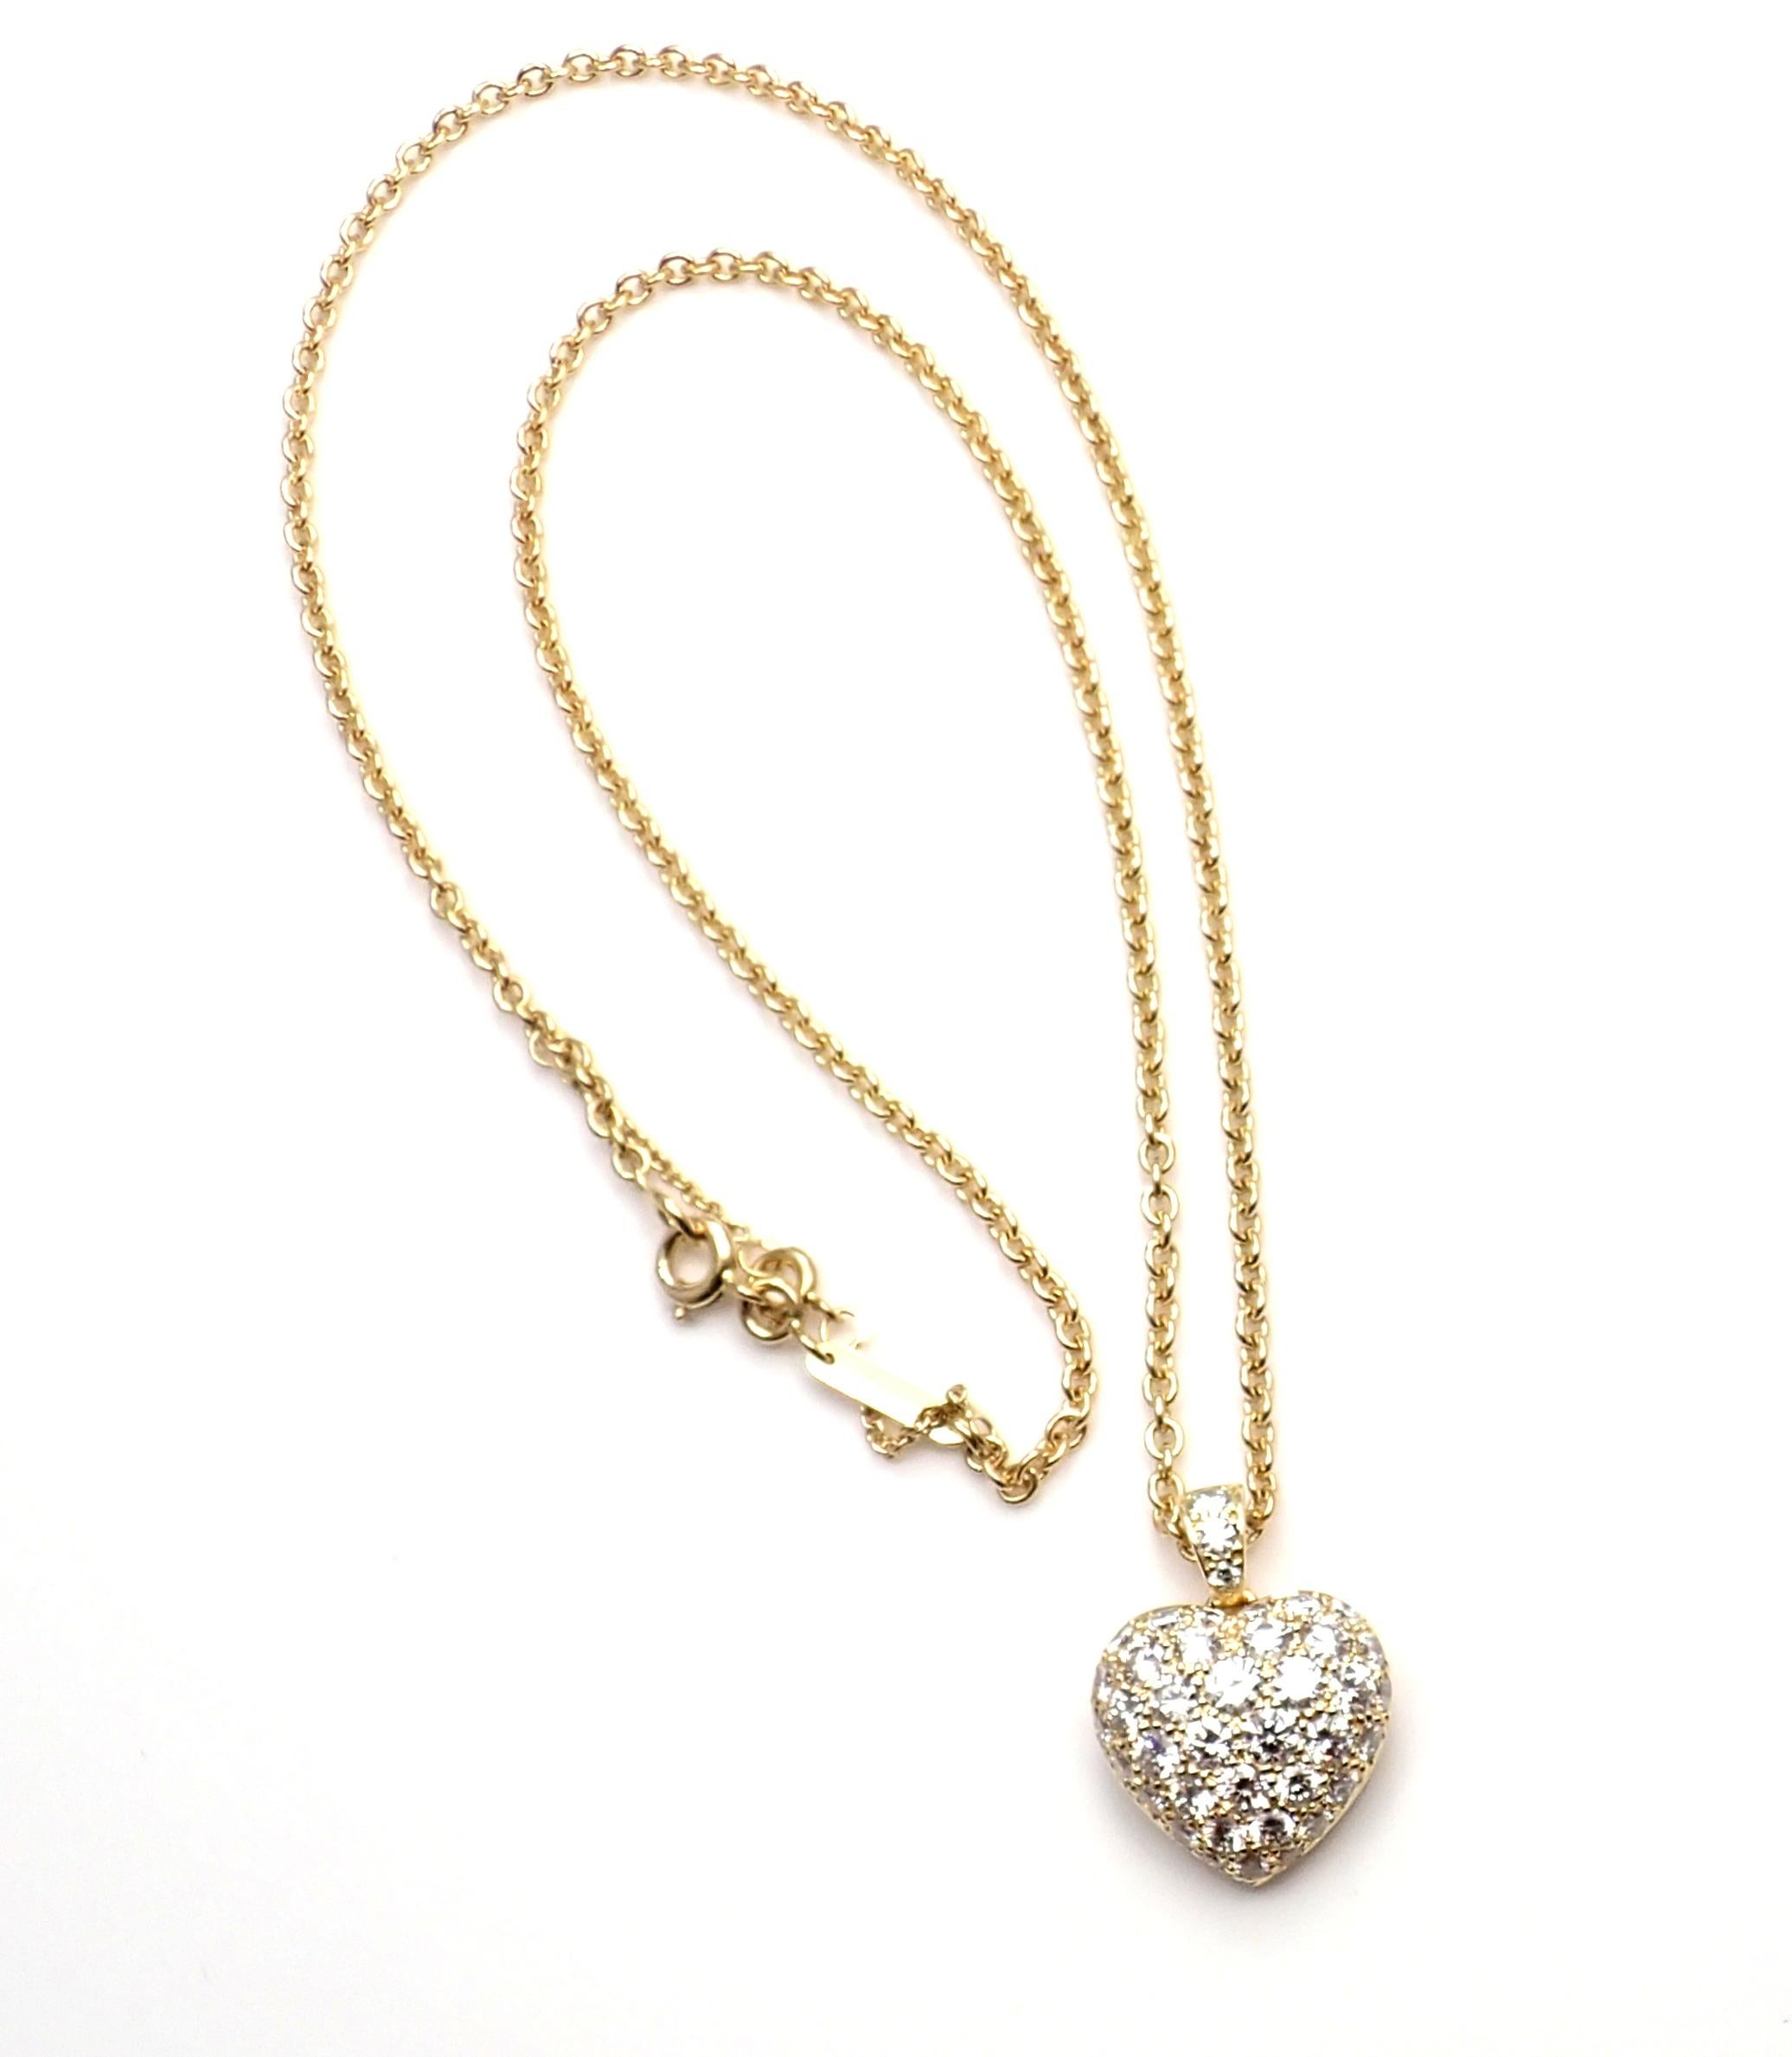 18k Gelbgold Diamant-Anhänger Herz-Halskette von Cartier. 
Mit runden Diamanten im Brillantschliff, Reinheit VS1, Farbe E, Gesamtgewicht ca. 1,40 ct.
Einzelheiten: 
Kette: Breite: 2mm
Länge: 16,5